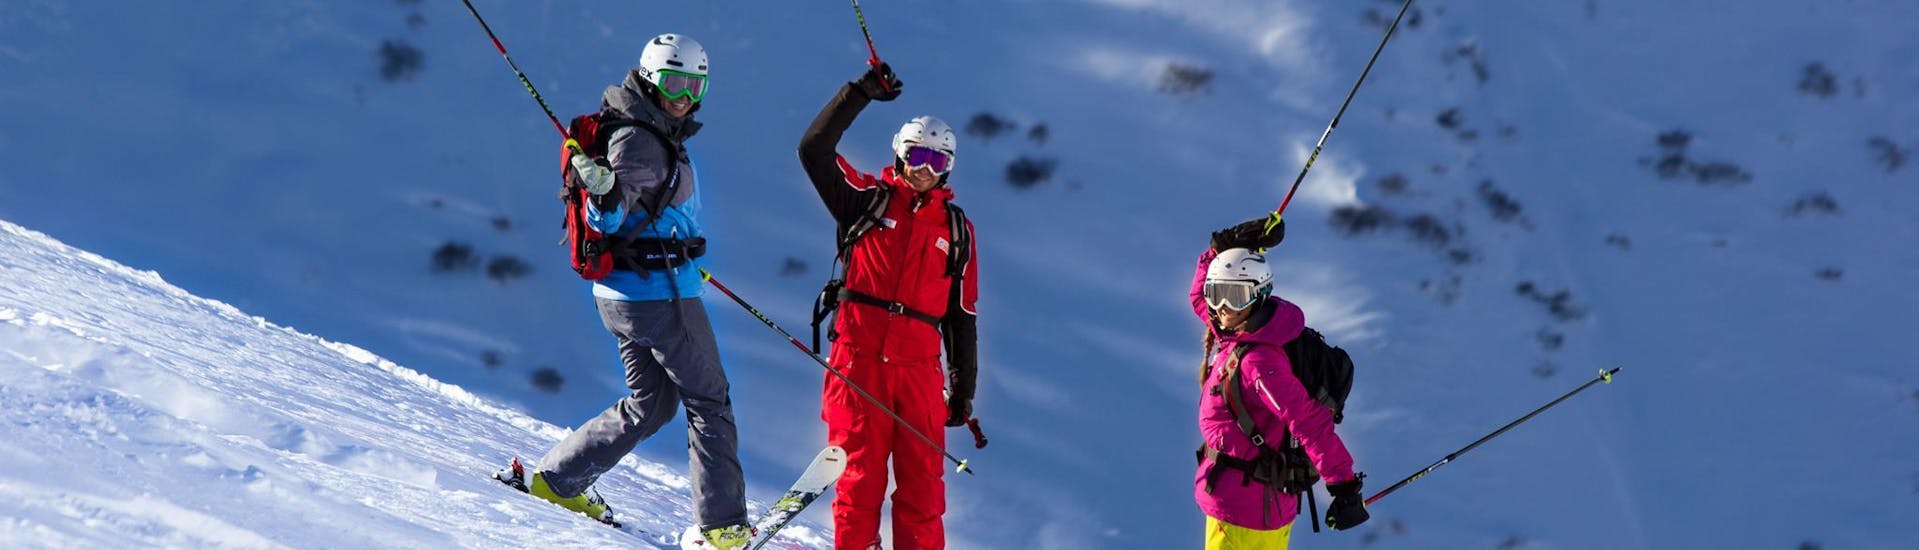 Drie skiërs staan op een rij op de piste tijdens hun volwassen skilessen voor gevorderden van Skischule Obergurgl.